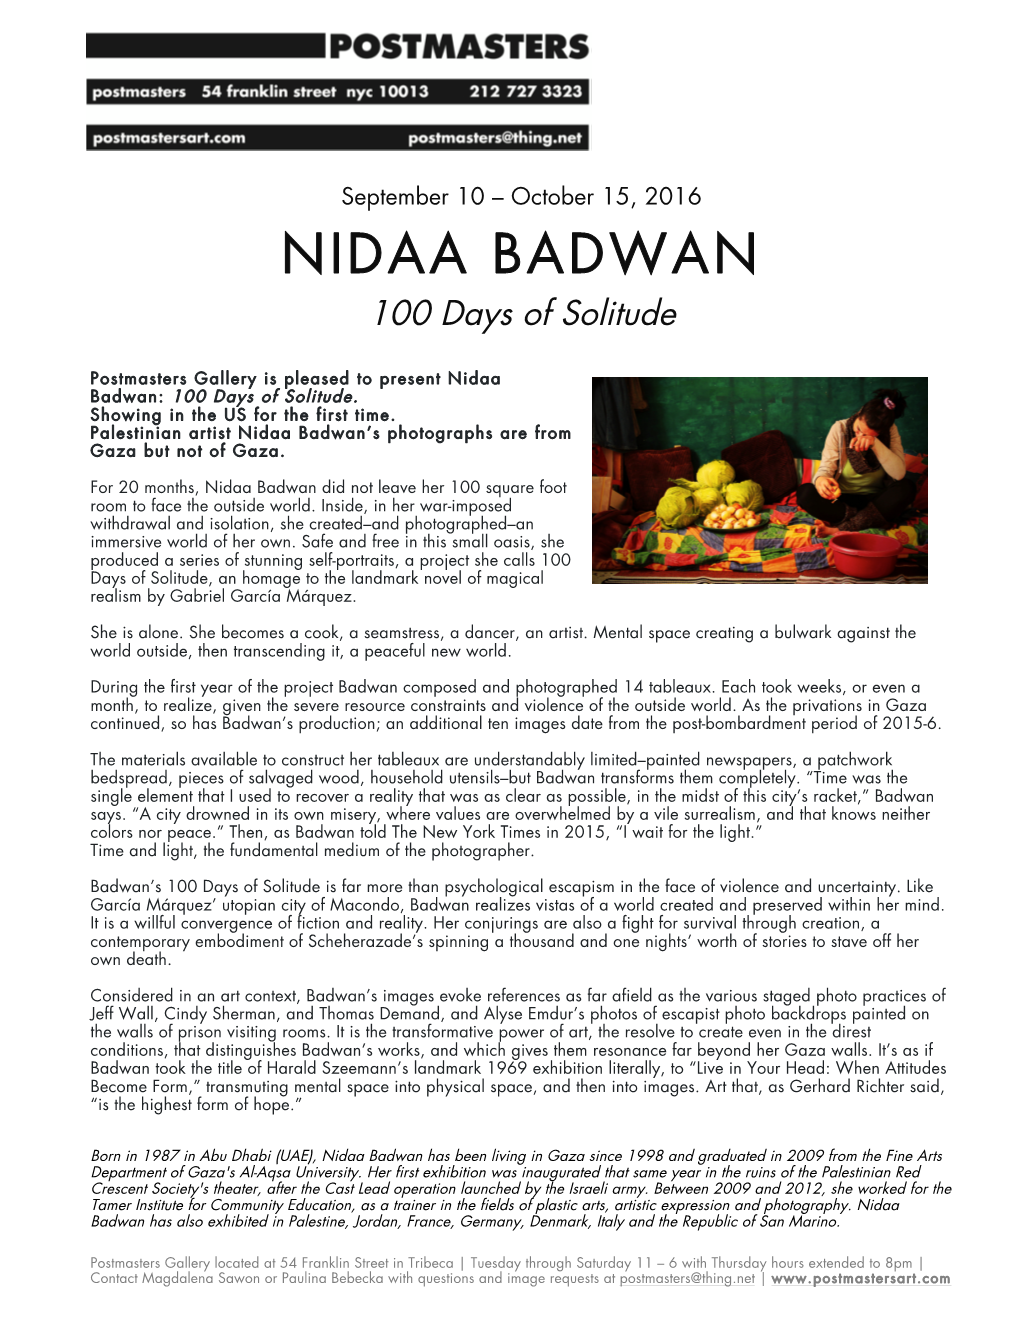 NIDAA BADWAN 100 Days of Solitude